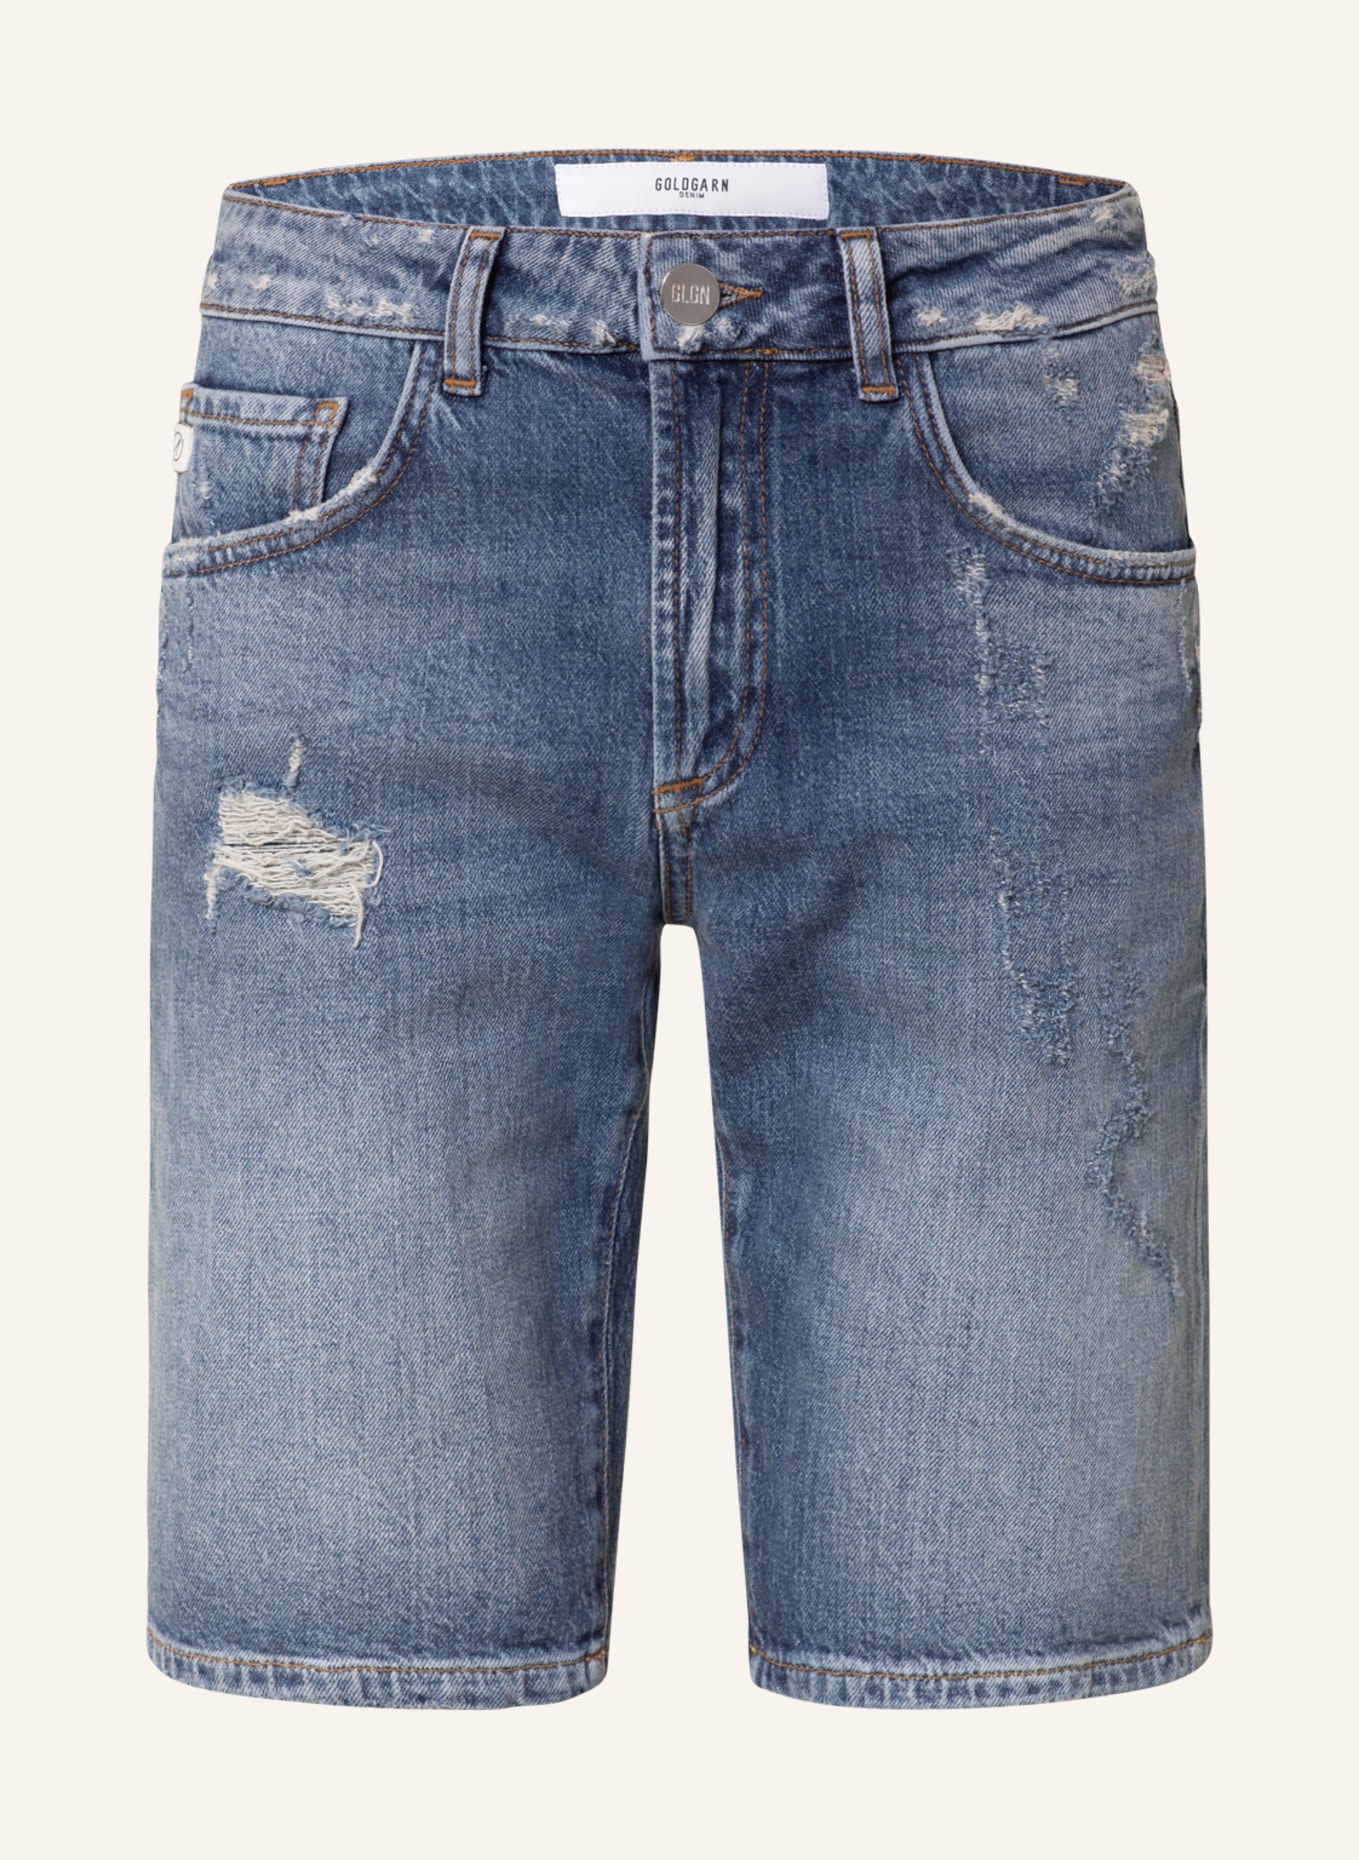 GOLDGARN DENIM Denim shorts AUGUSTA, Color: 1010 Vintage Blue (Image 1)